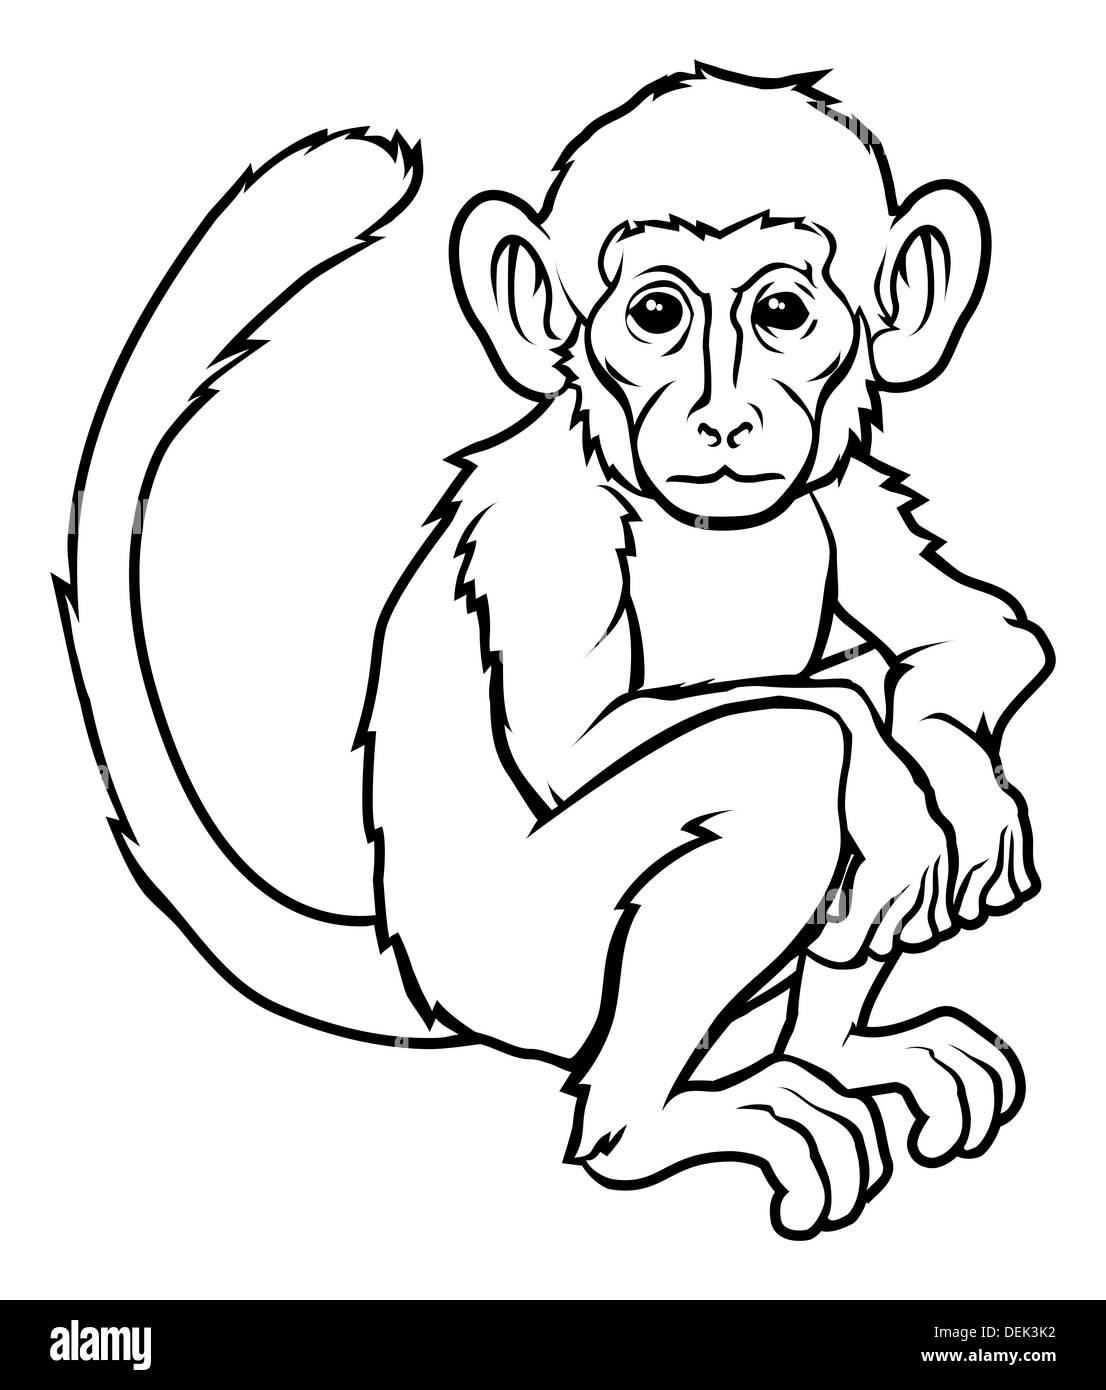 Una illustrazione di una scimmia stilizzata forse una scimmia tattoo Foto Stock